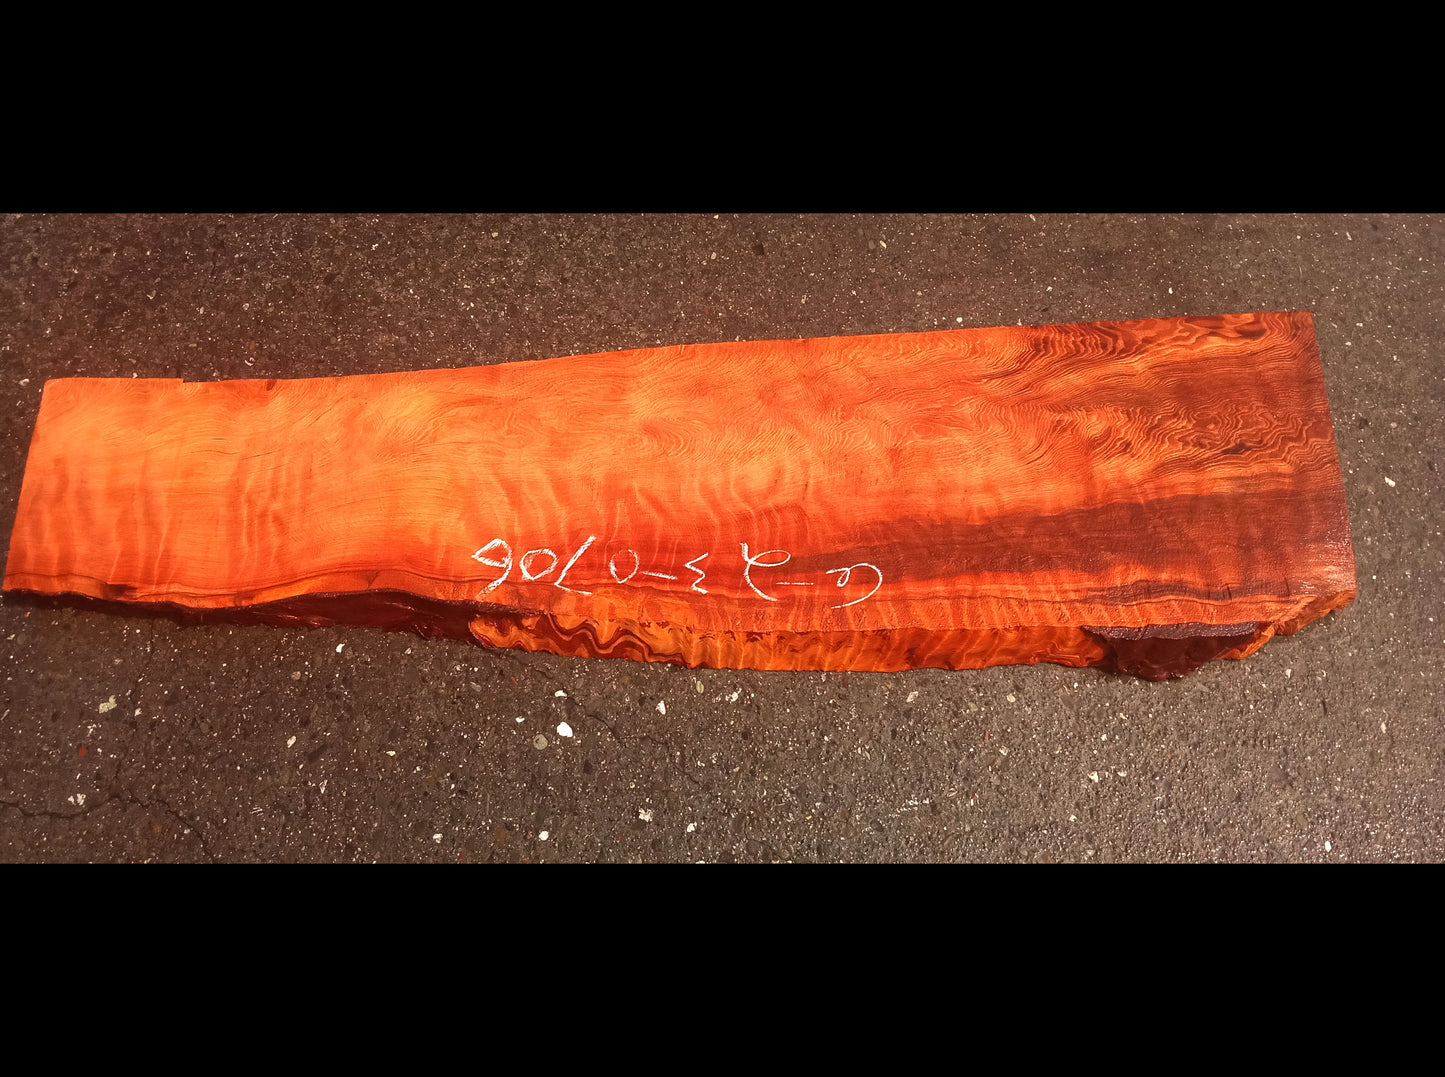 Quilted redwood | guitar billet | wood turning | DIY crafts | g23-0706